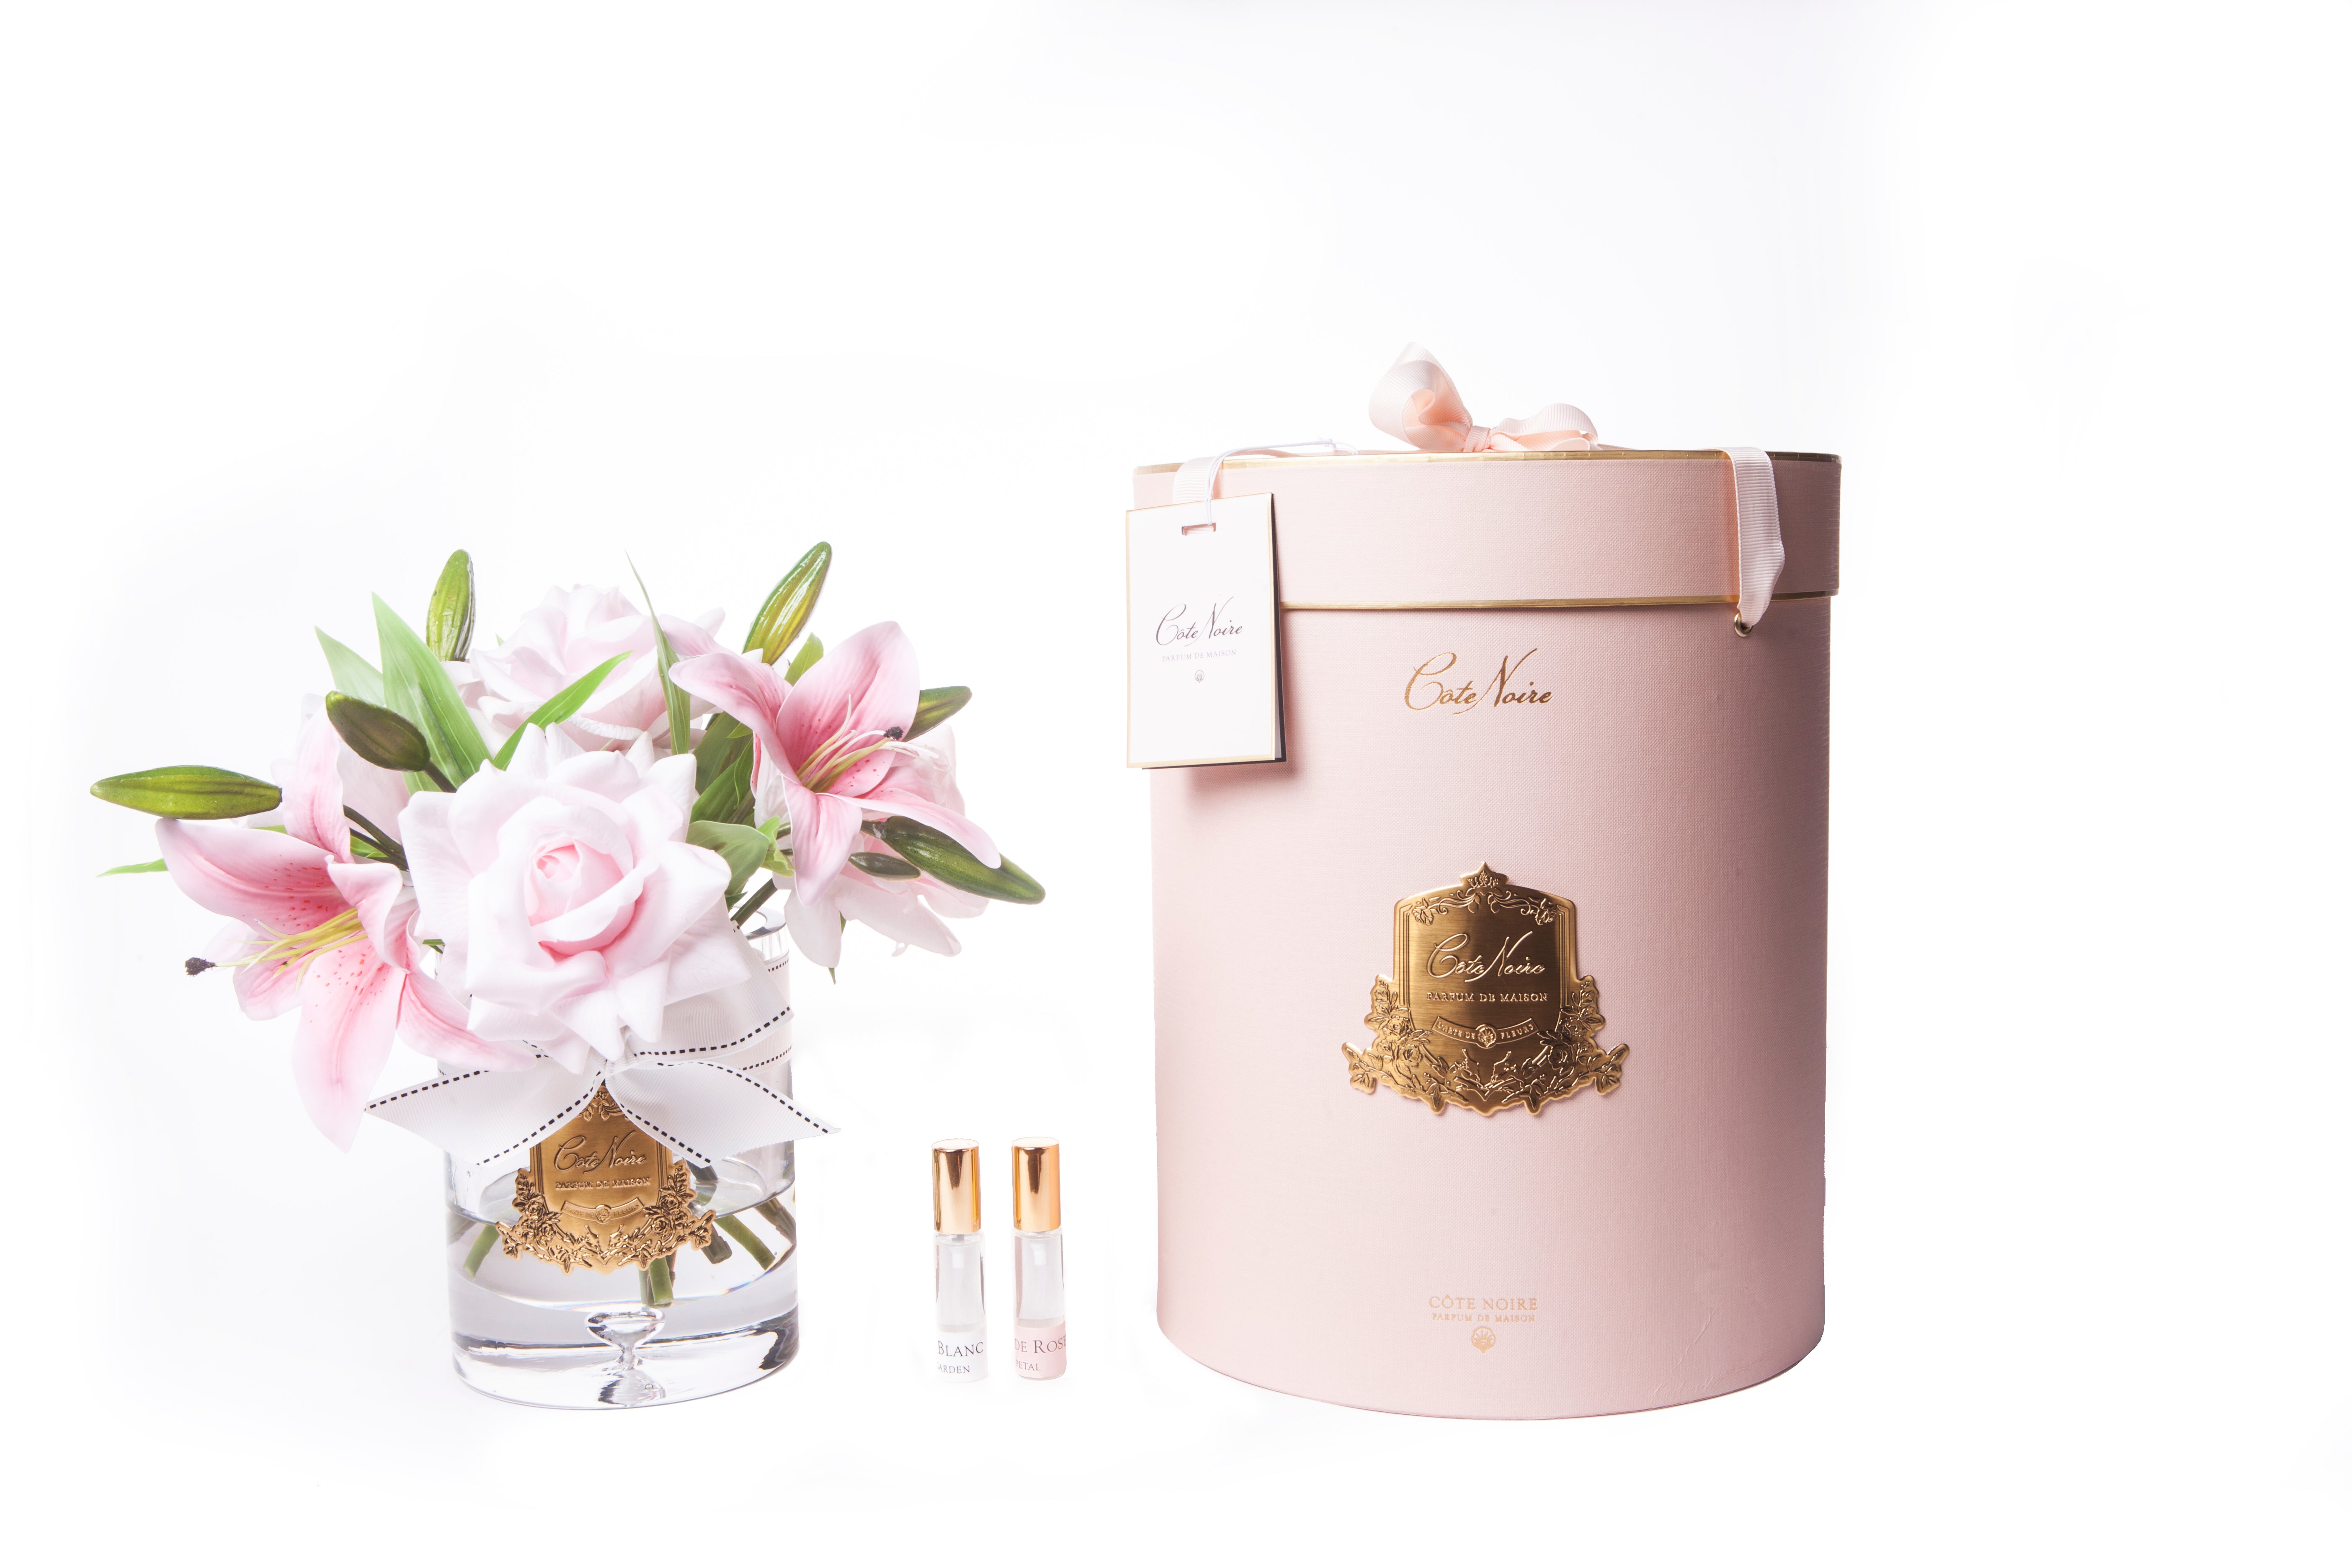 pinke luxury lilies duftrosen im glas neben pinker zylenderbox. dazwischen zwei parfumsprays.